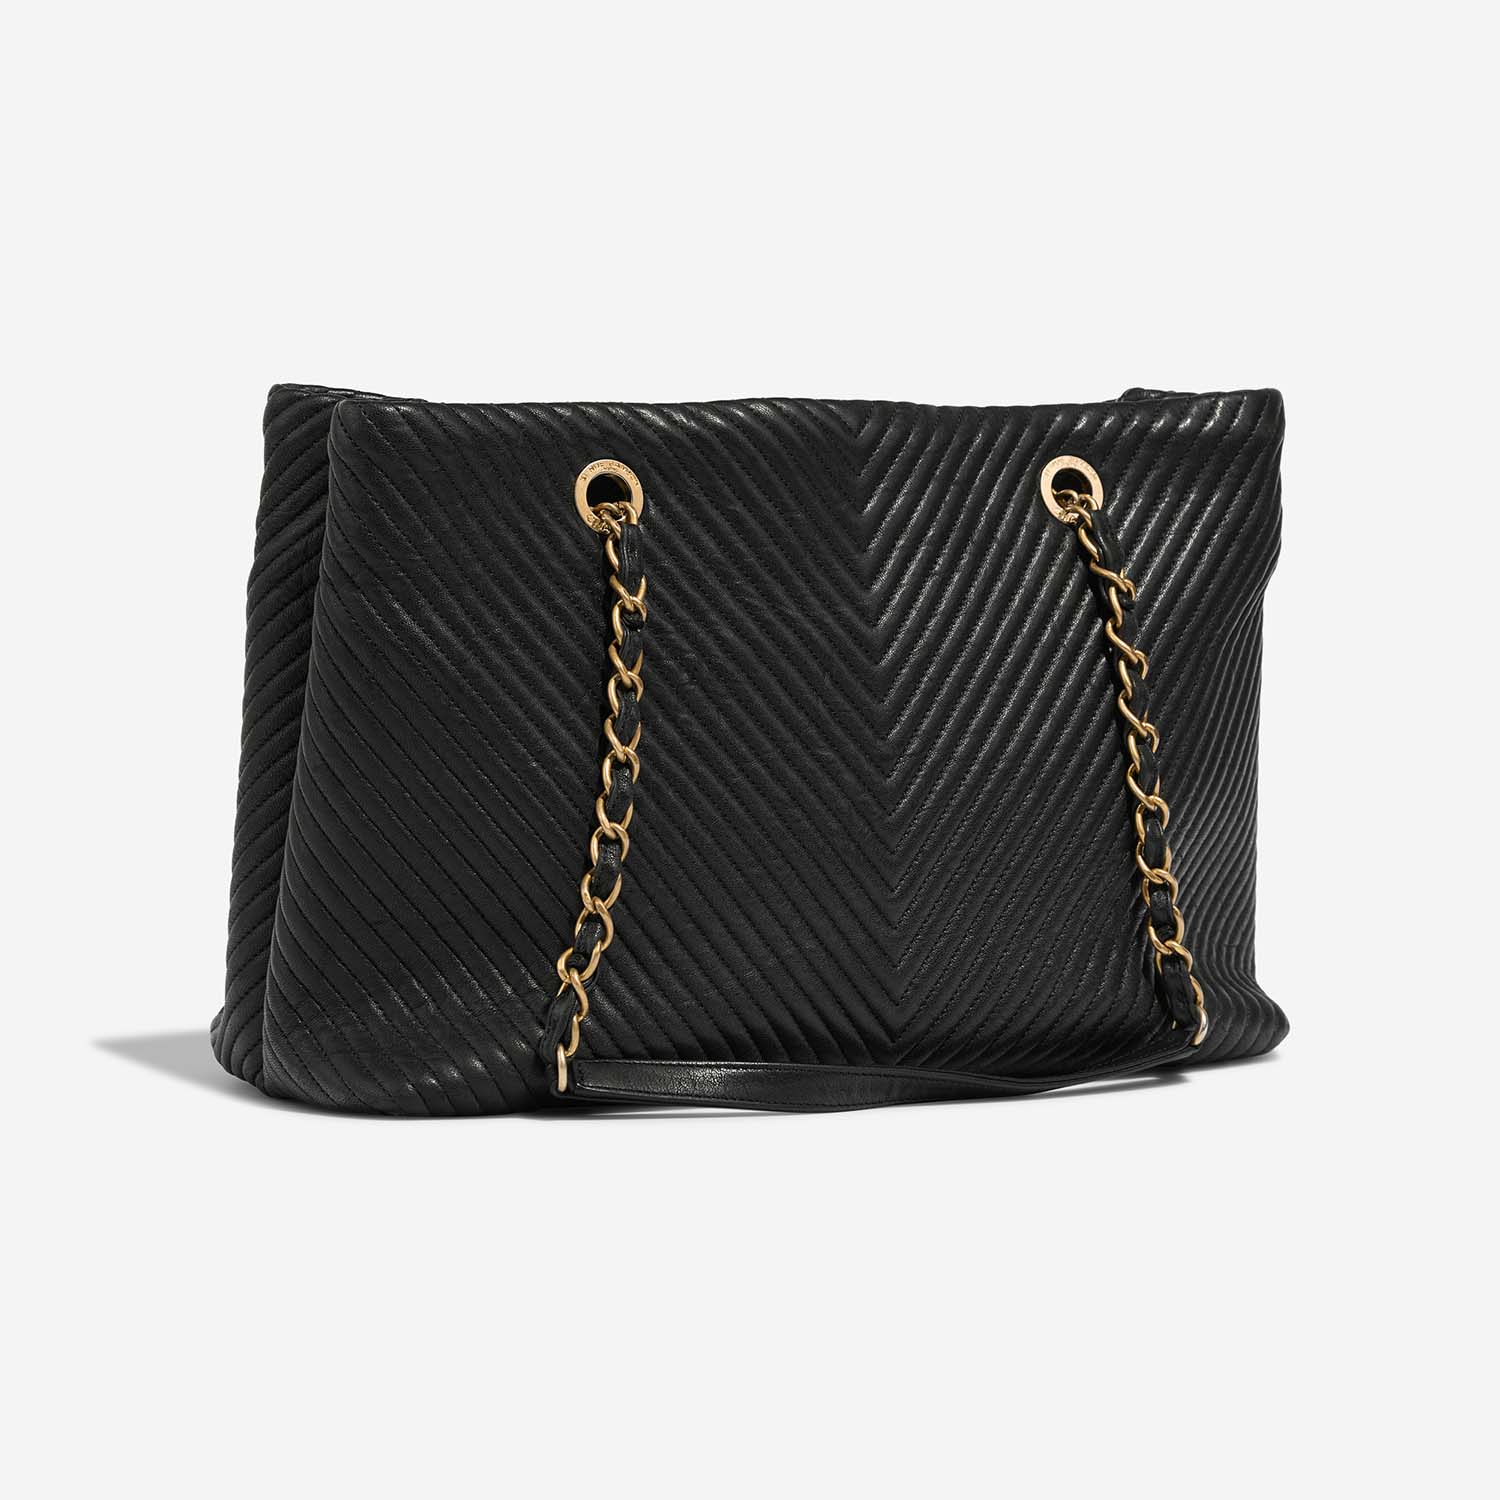 Chanel GST Large Black Side Back | Verkaufen Sie Ihre Designer-Tasche auf Saclab.com